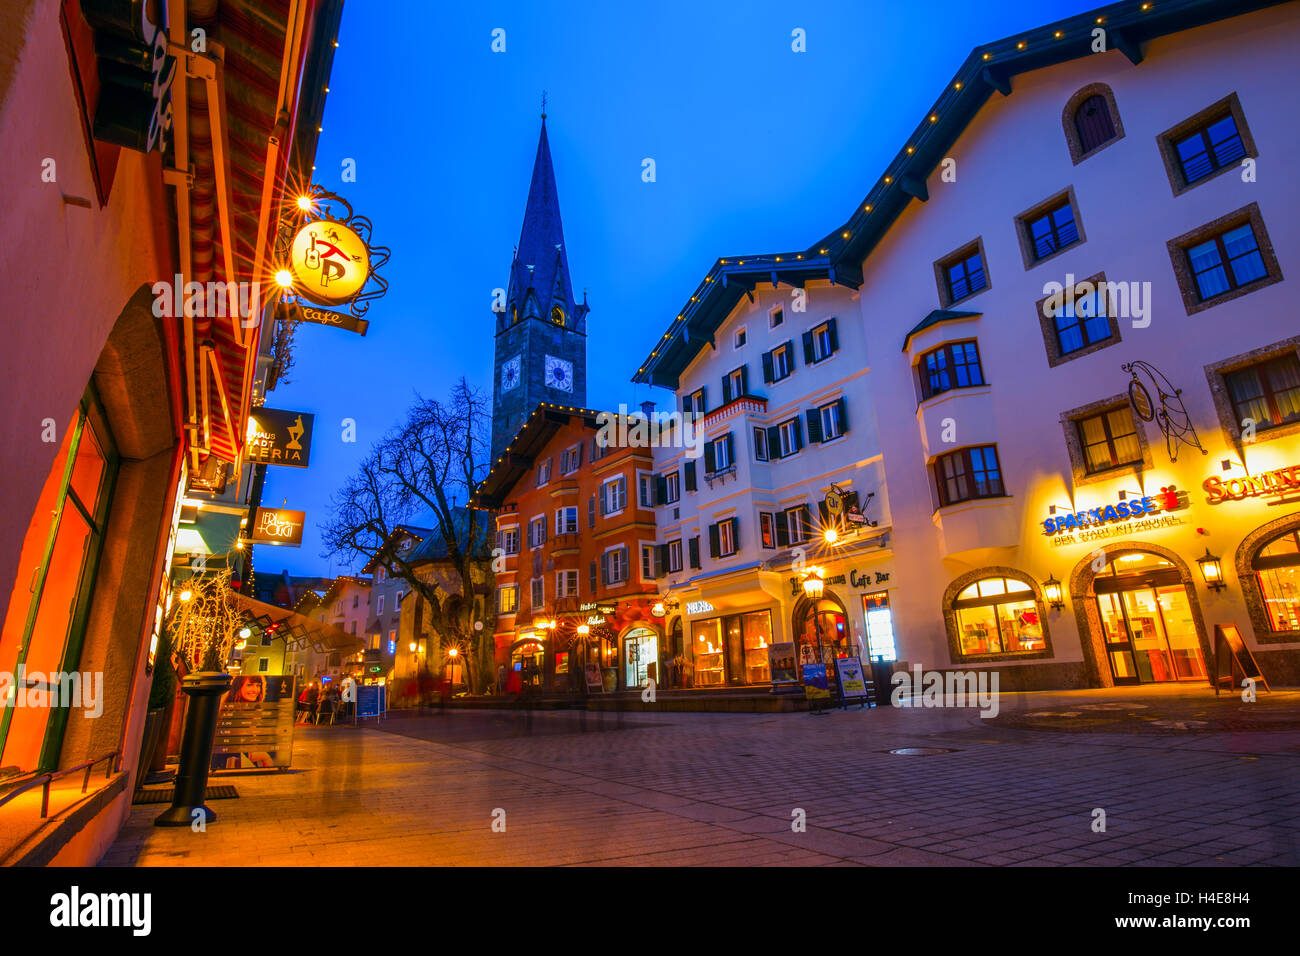 Blick auf historische Stadt Kitzbühel bei Nacht, Ort des berühmten Hahnenkamm-Rennen und eine der besten Ski-Resorts auf der ganzen Welt. Stockfoto